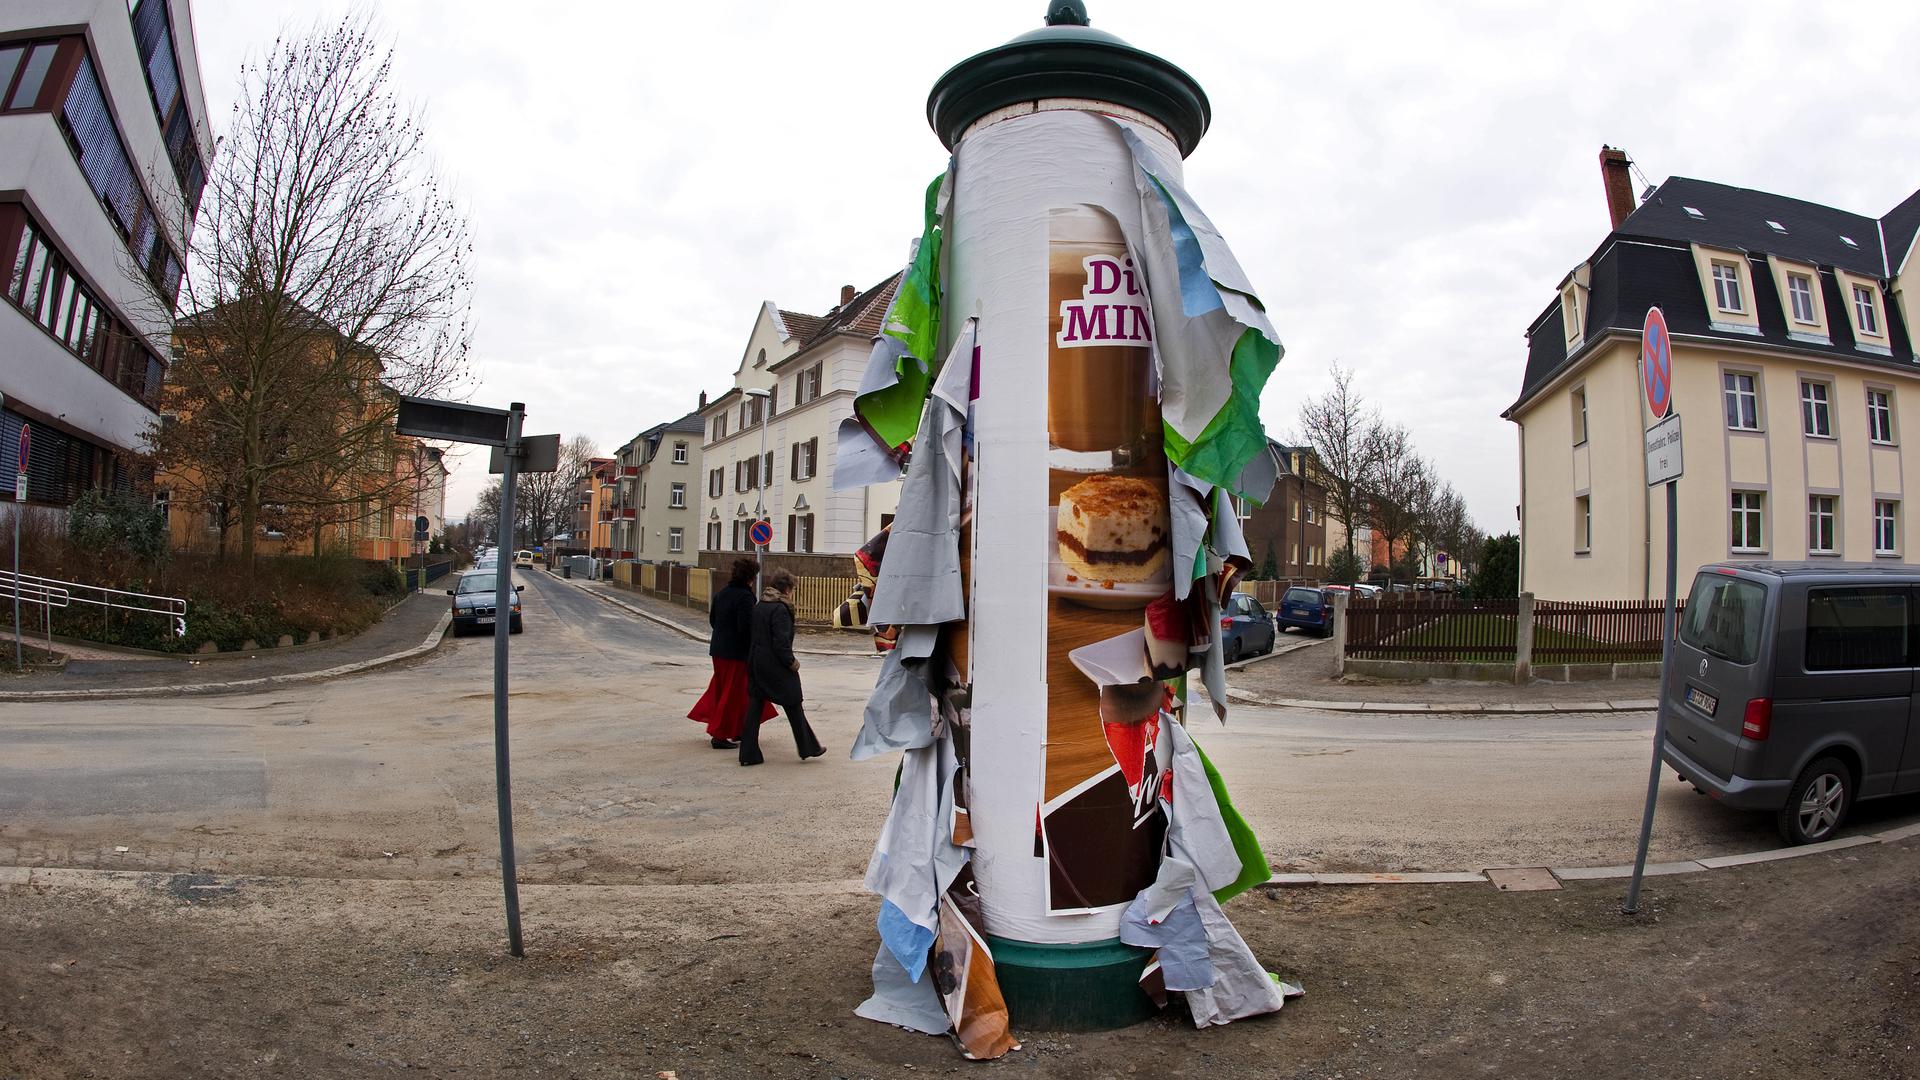 An einer Litfaßsäule in Radebeul hängen am Mittwoch (16.02.2011) bunte Plakatreste herunter. Dem Anschein nach bräuchte diese Säule bald einmal wieder eine "Schönheitspflege". Foto: Arno Burgi dpa/lsn ++ +++ dpa-Bildfunk +++